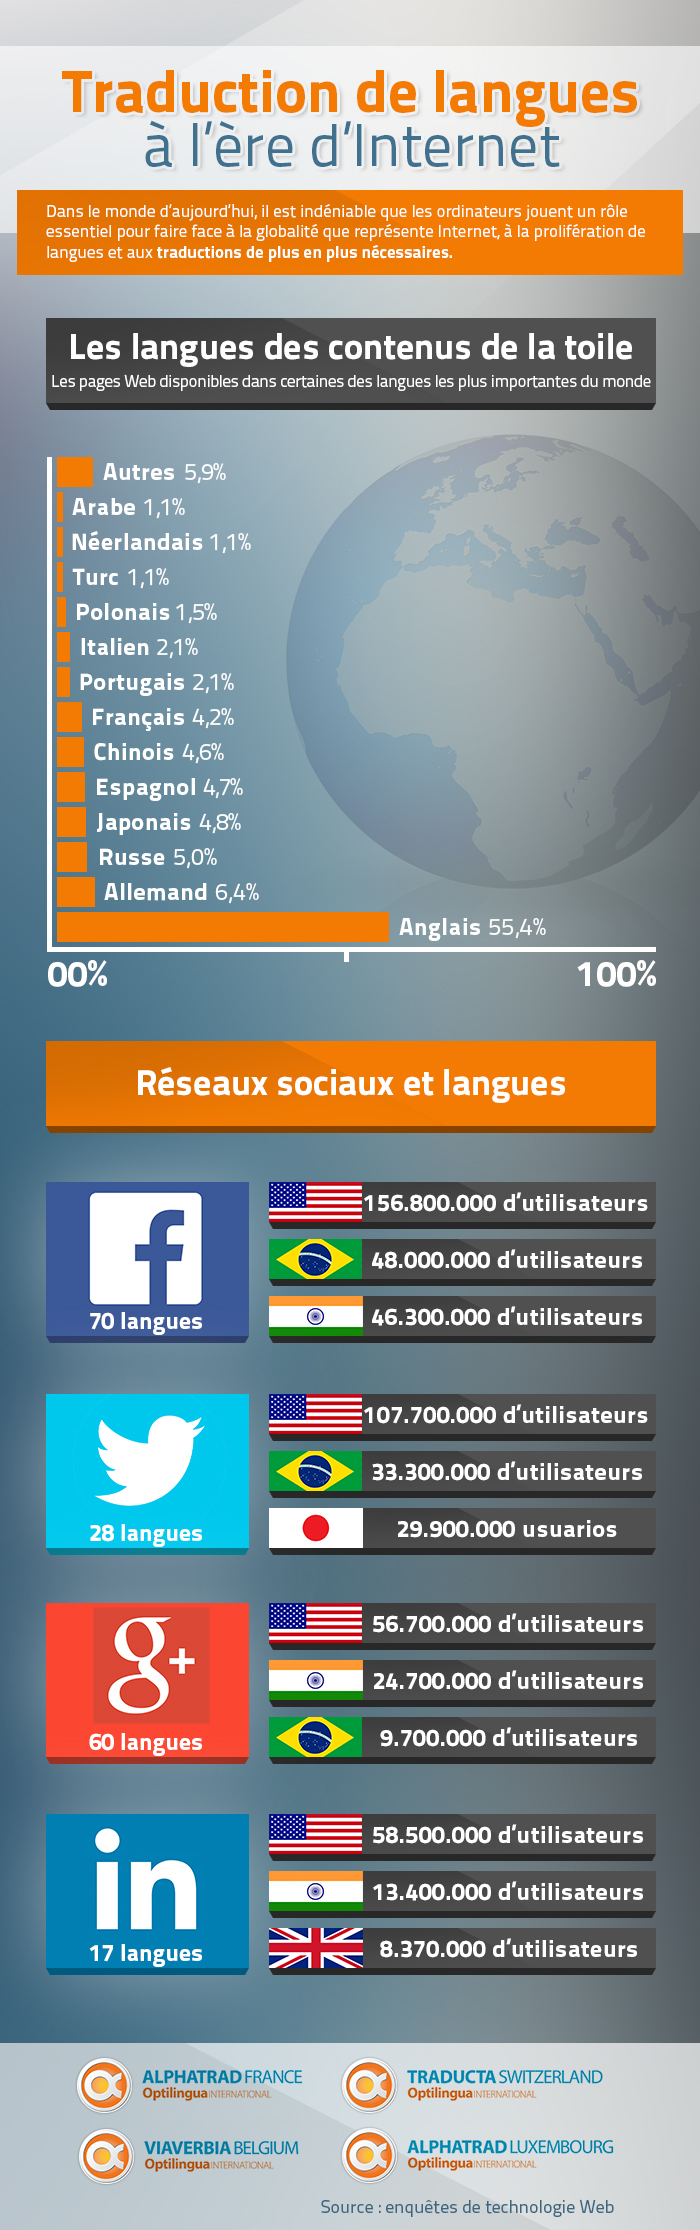 Traduction de langues à l’ère d’Internet - Infographie Alphatrad France